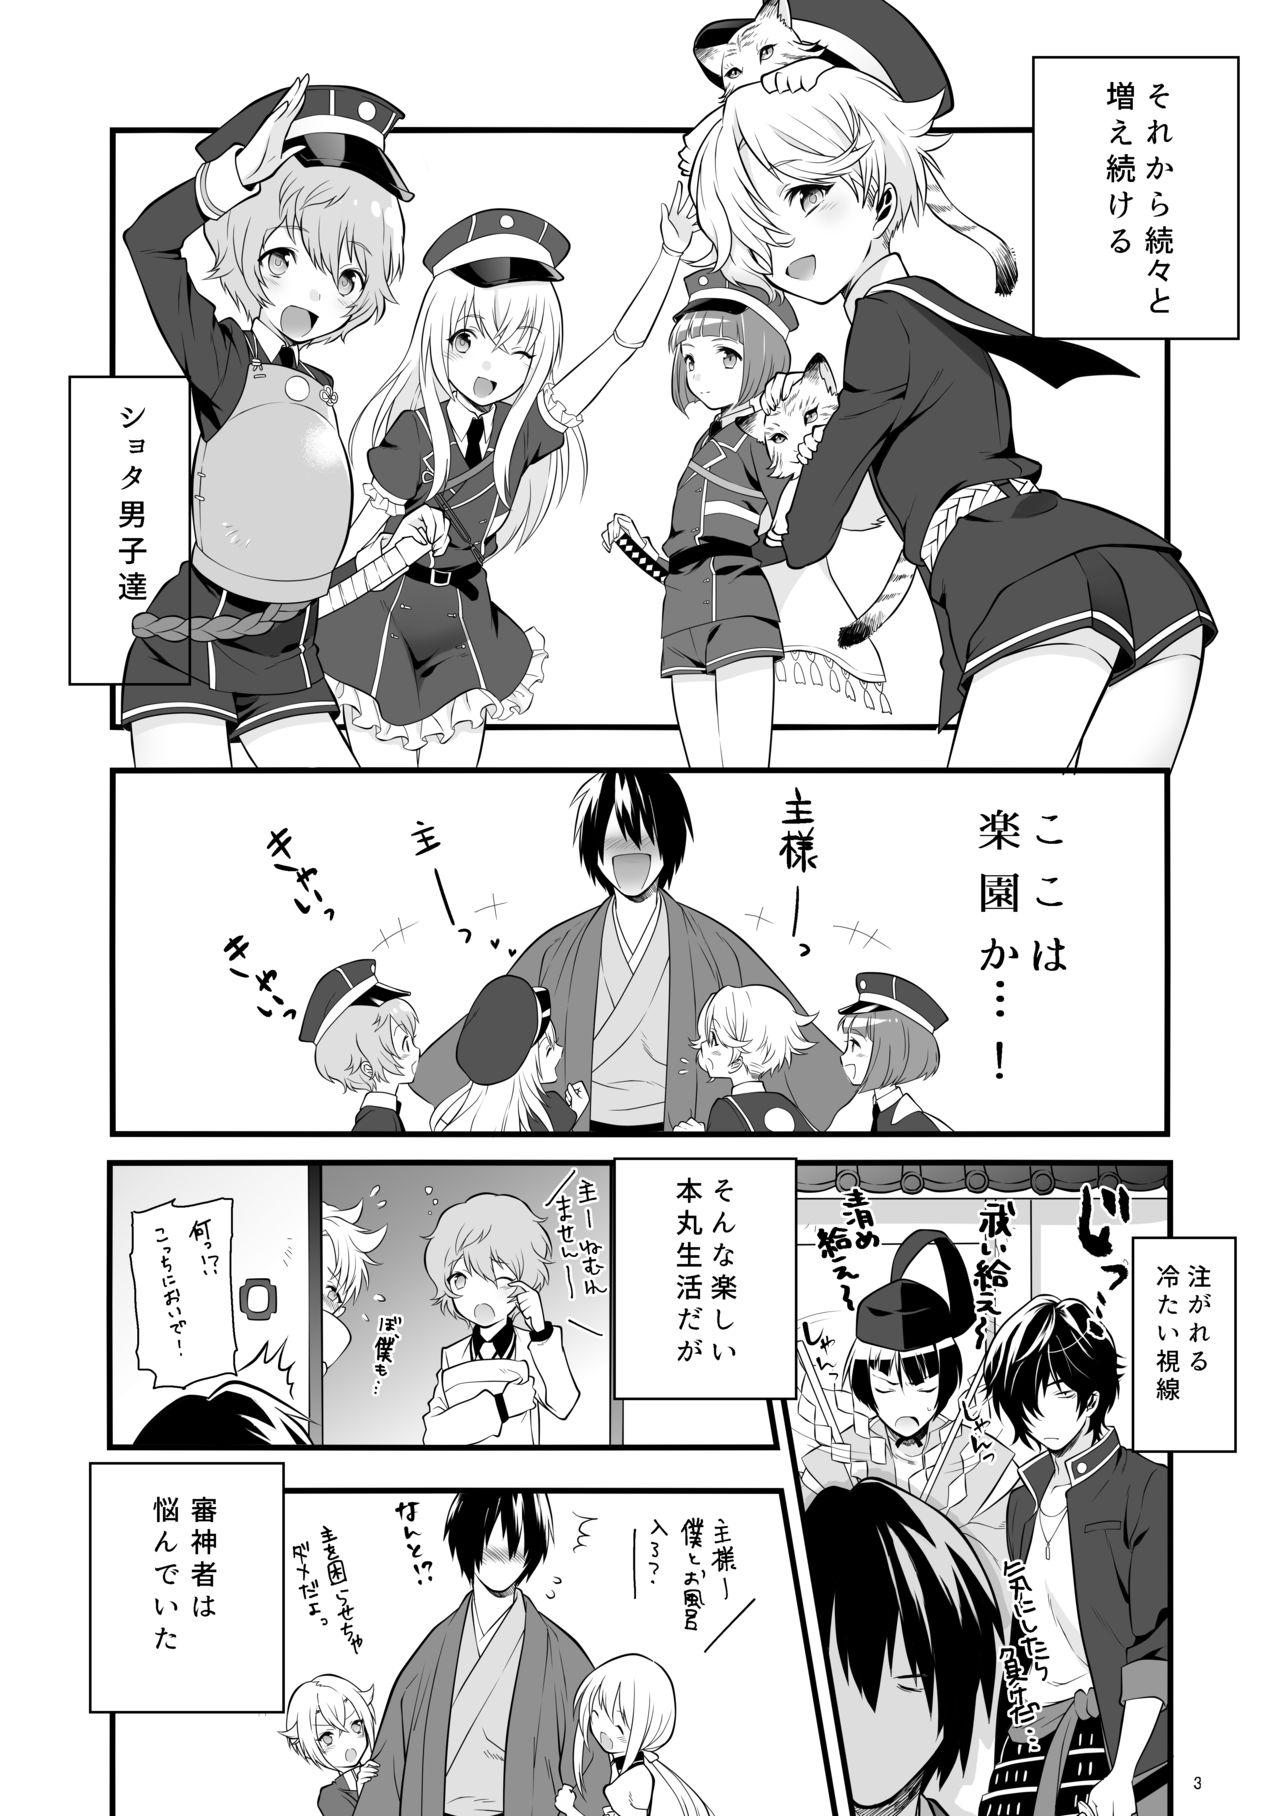 Classroom Hajimete no Hotarumaru - Touken ranbu Clit - Page 6